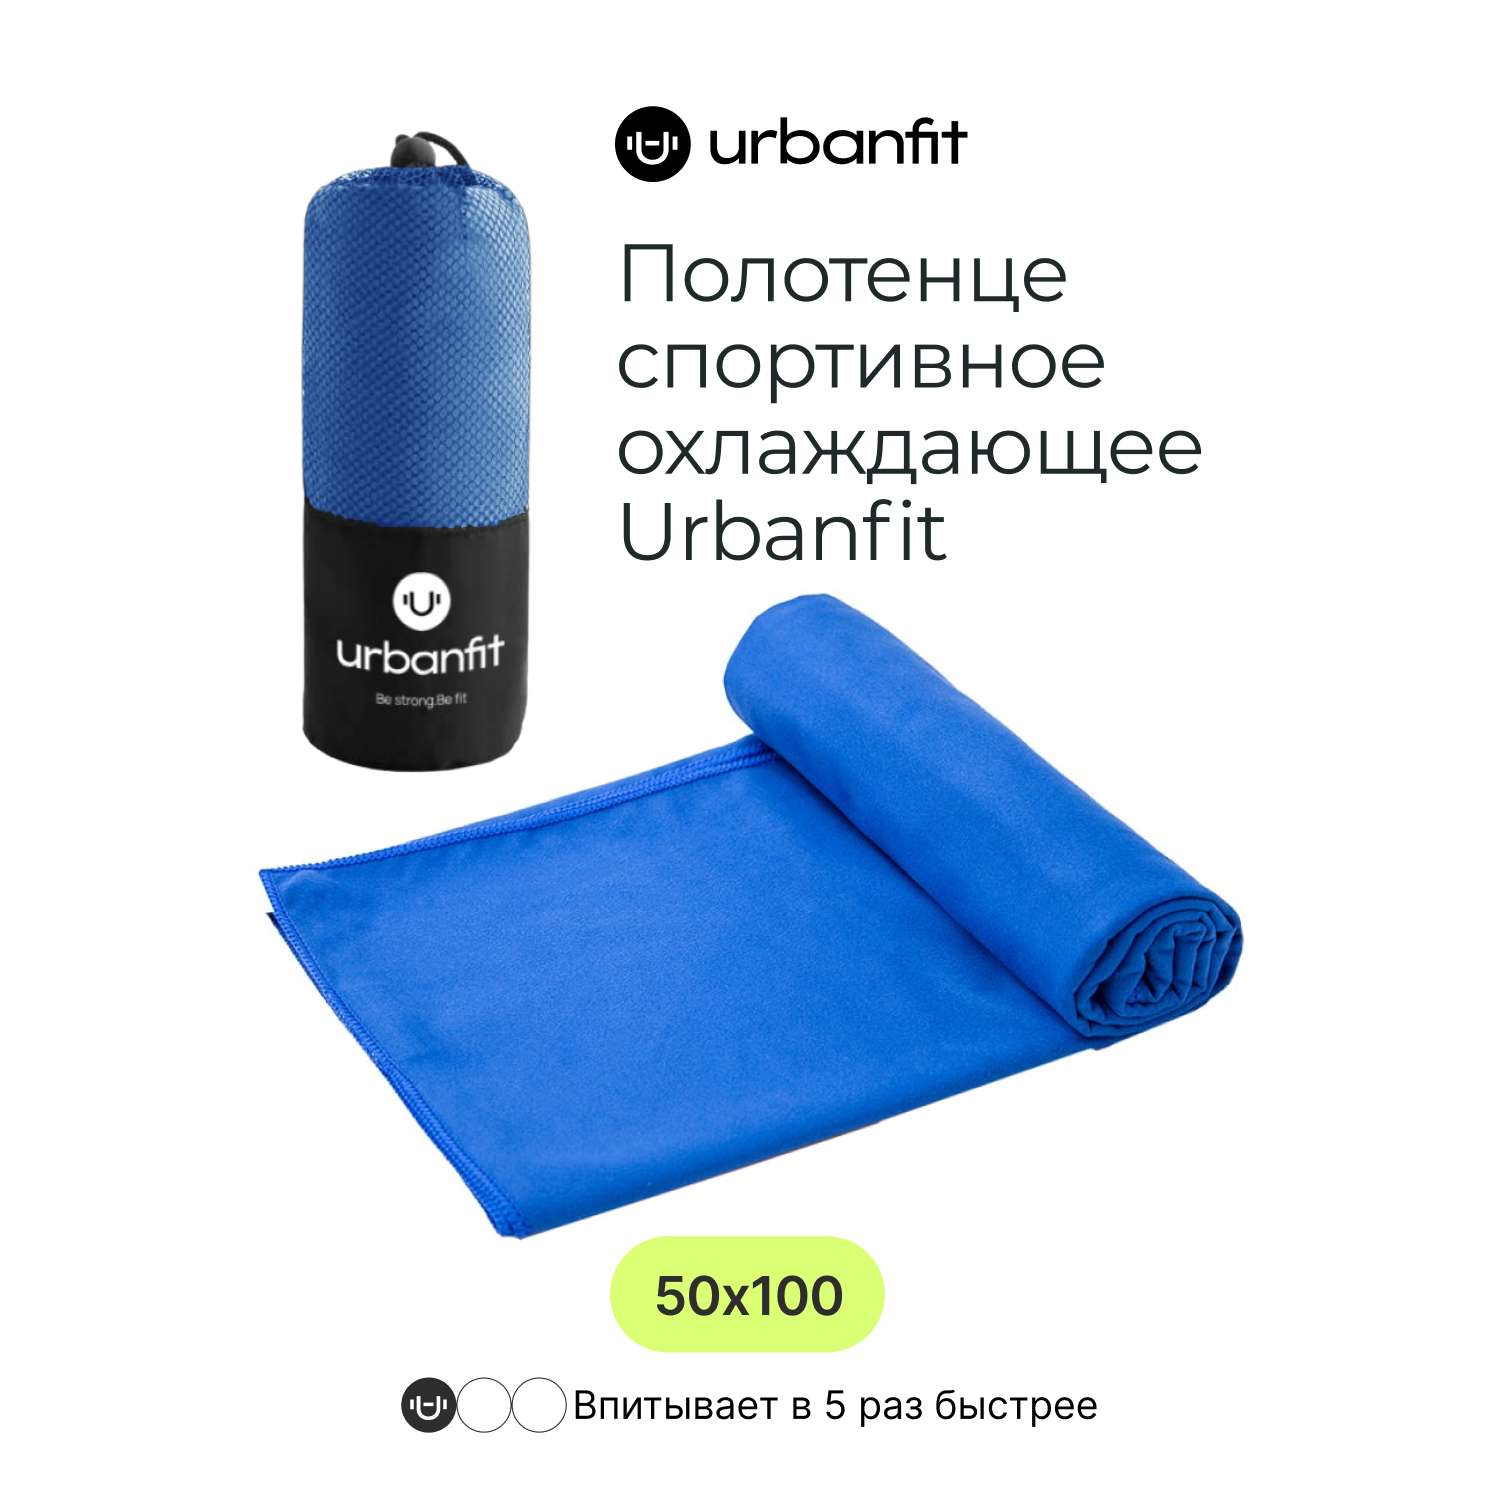 Полотенце спортивное Urbanfit синий размер 50х100 см - фото 2